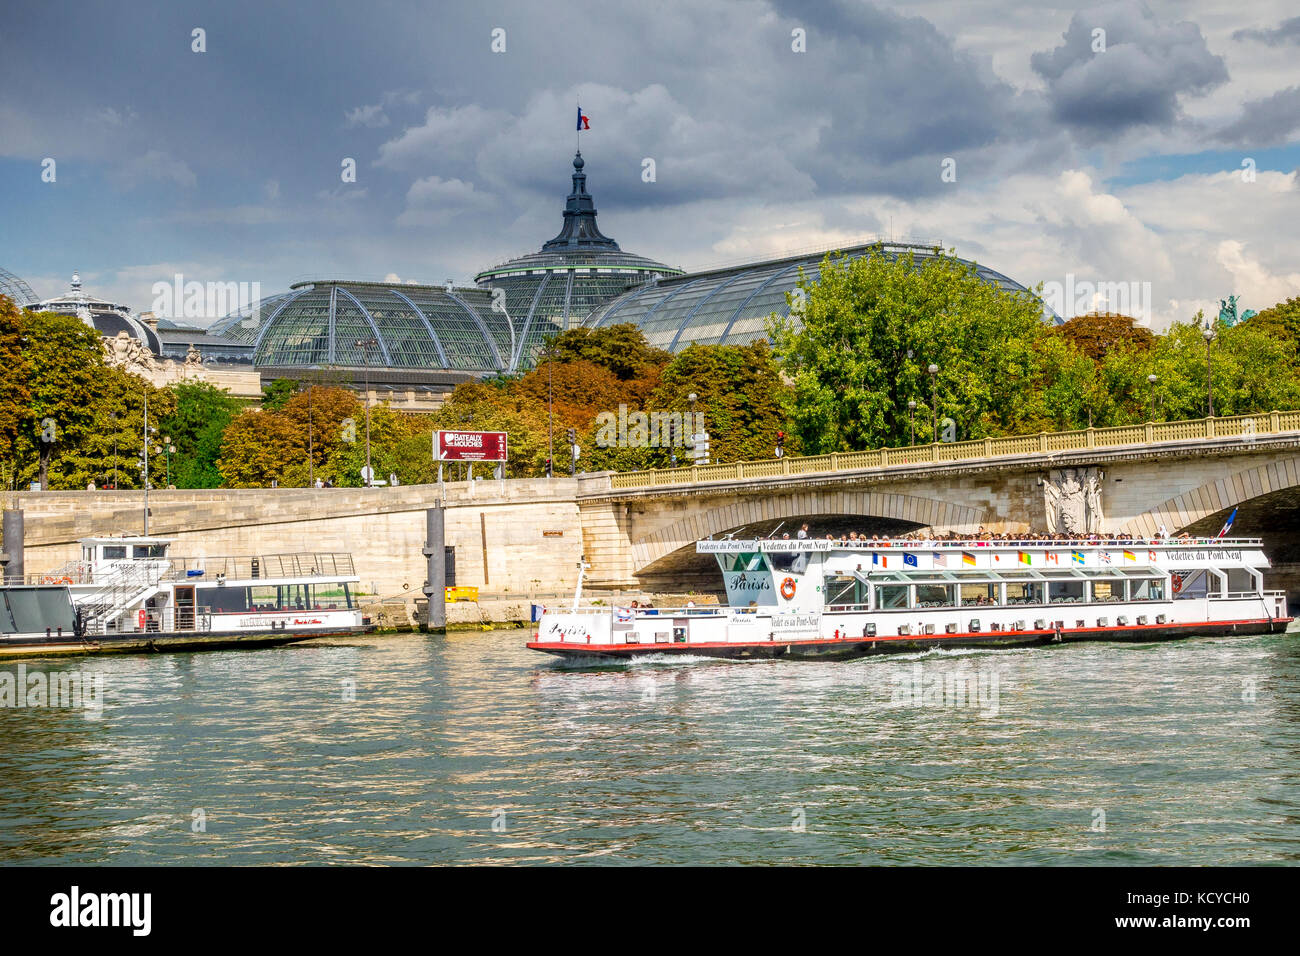 Un bateau plein de touristes cruise la Seine pour des visites touristiques à Paris, France Banque D'Images